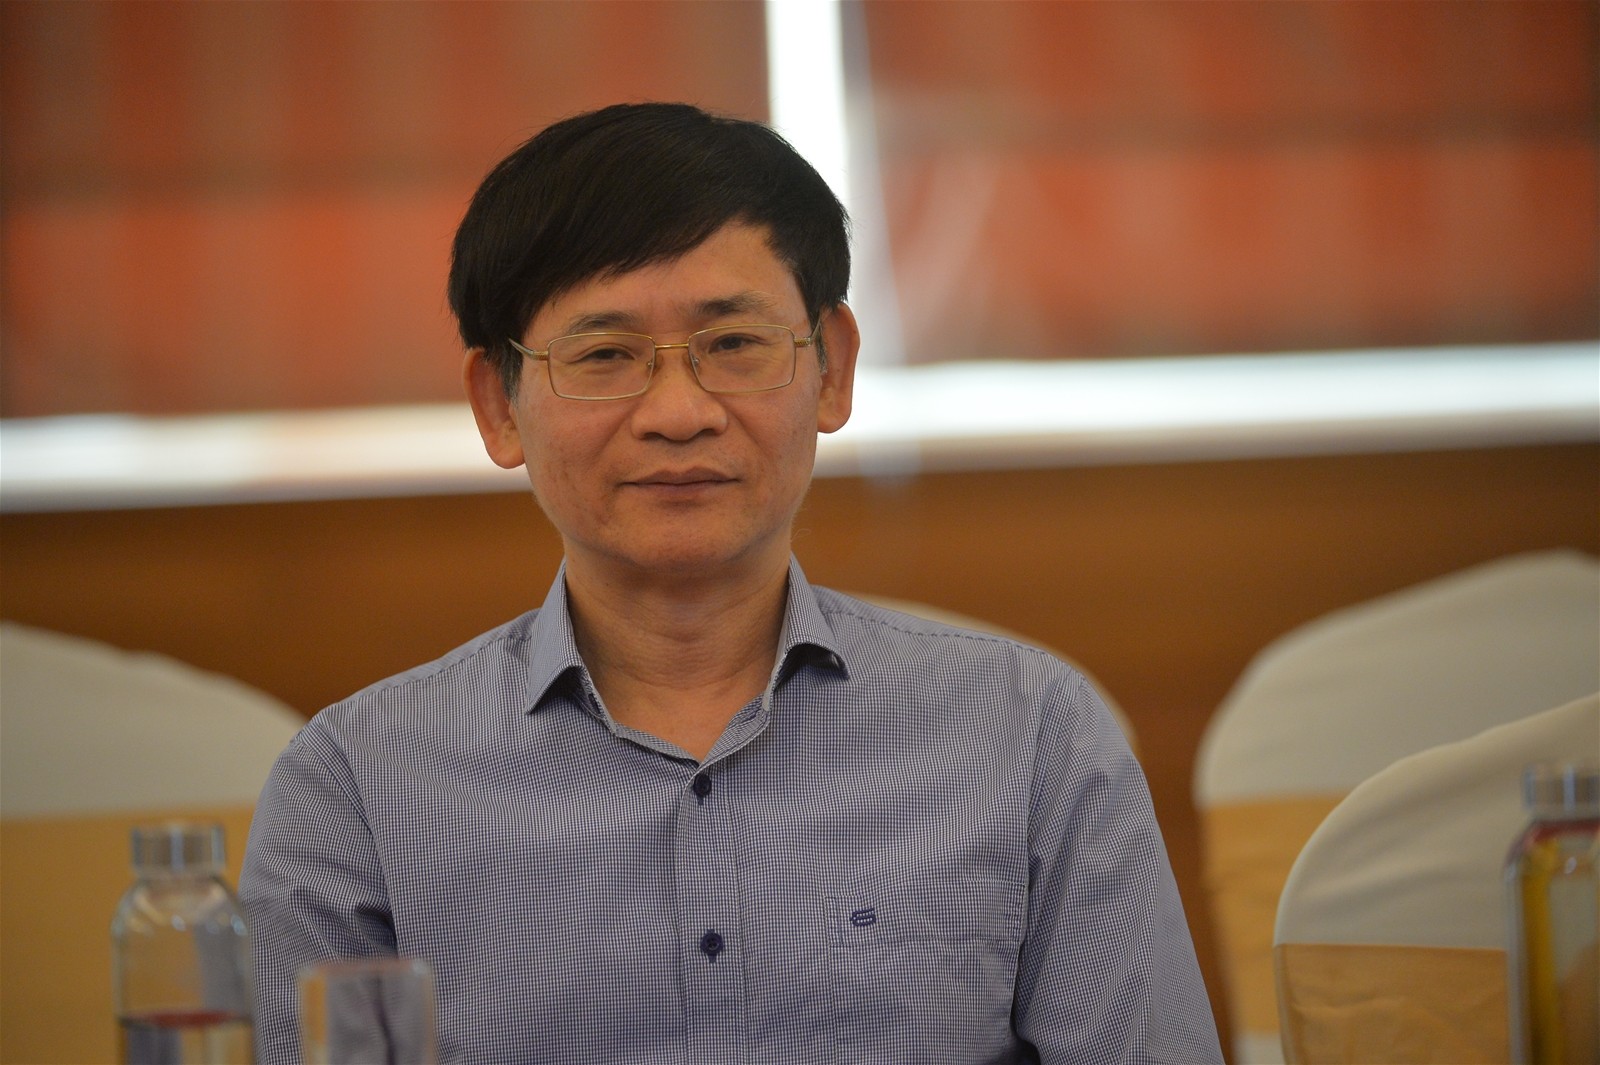 
Luật sư Trương Thanh Đức - Giám đốc Công ty Luật Anvi
